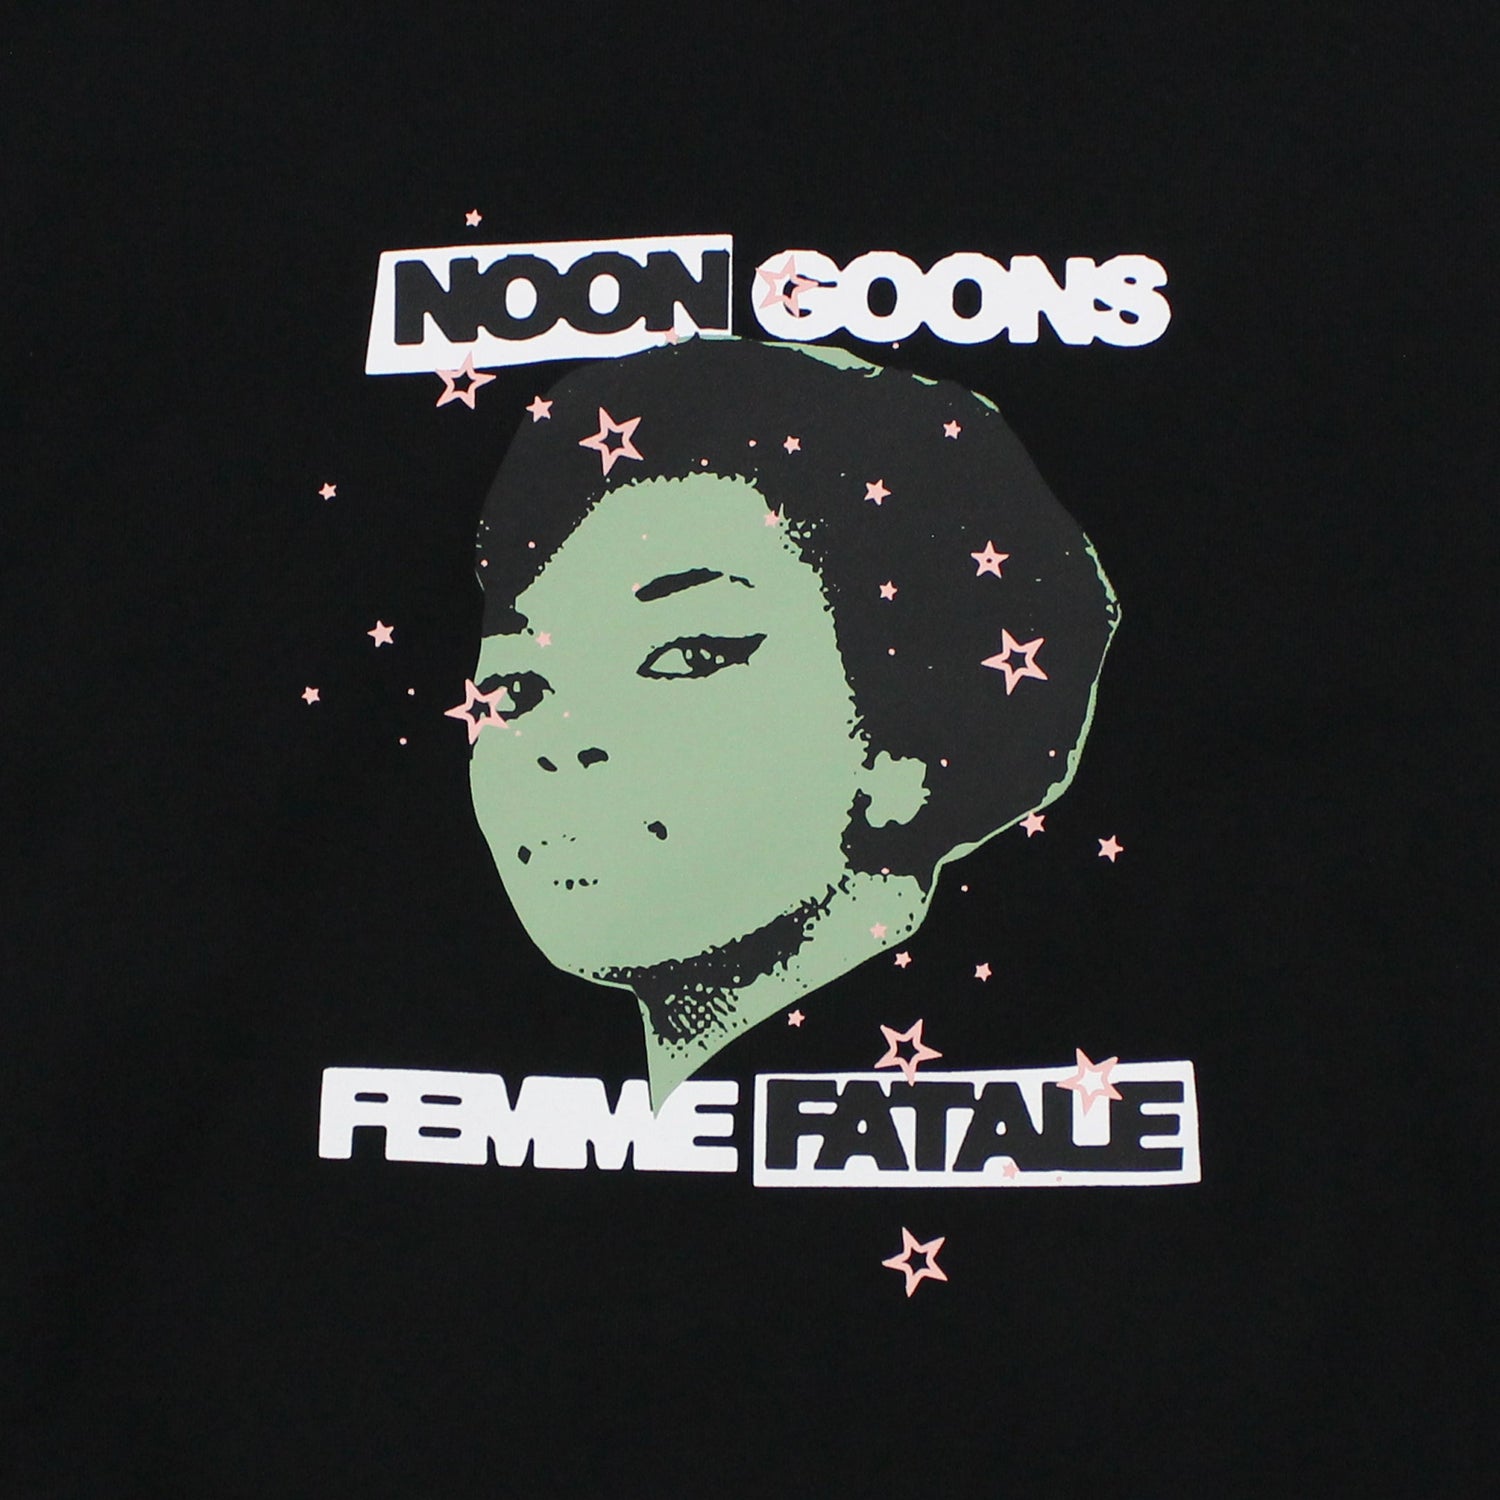 Femme Fatale Sweatshirt